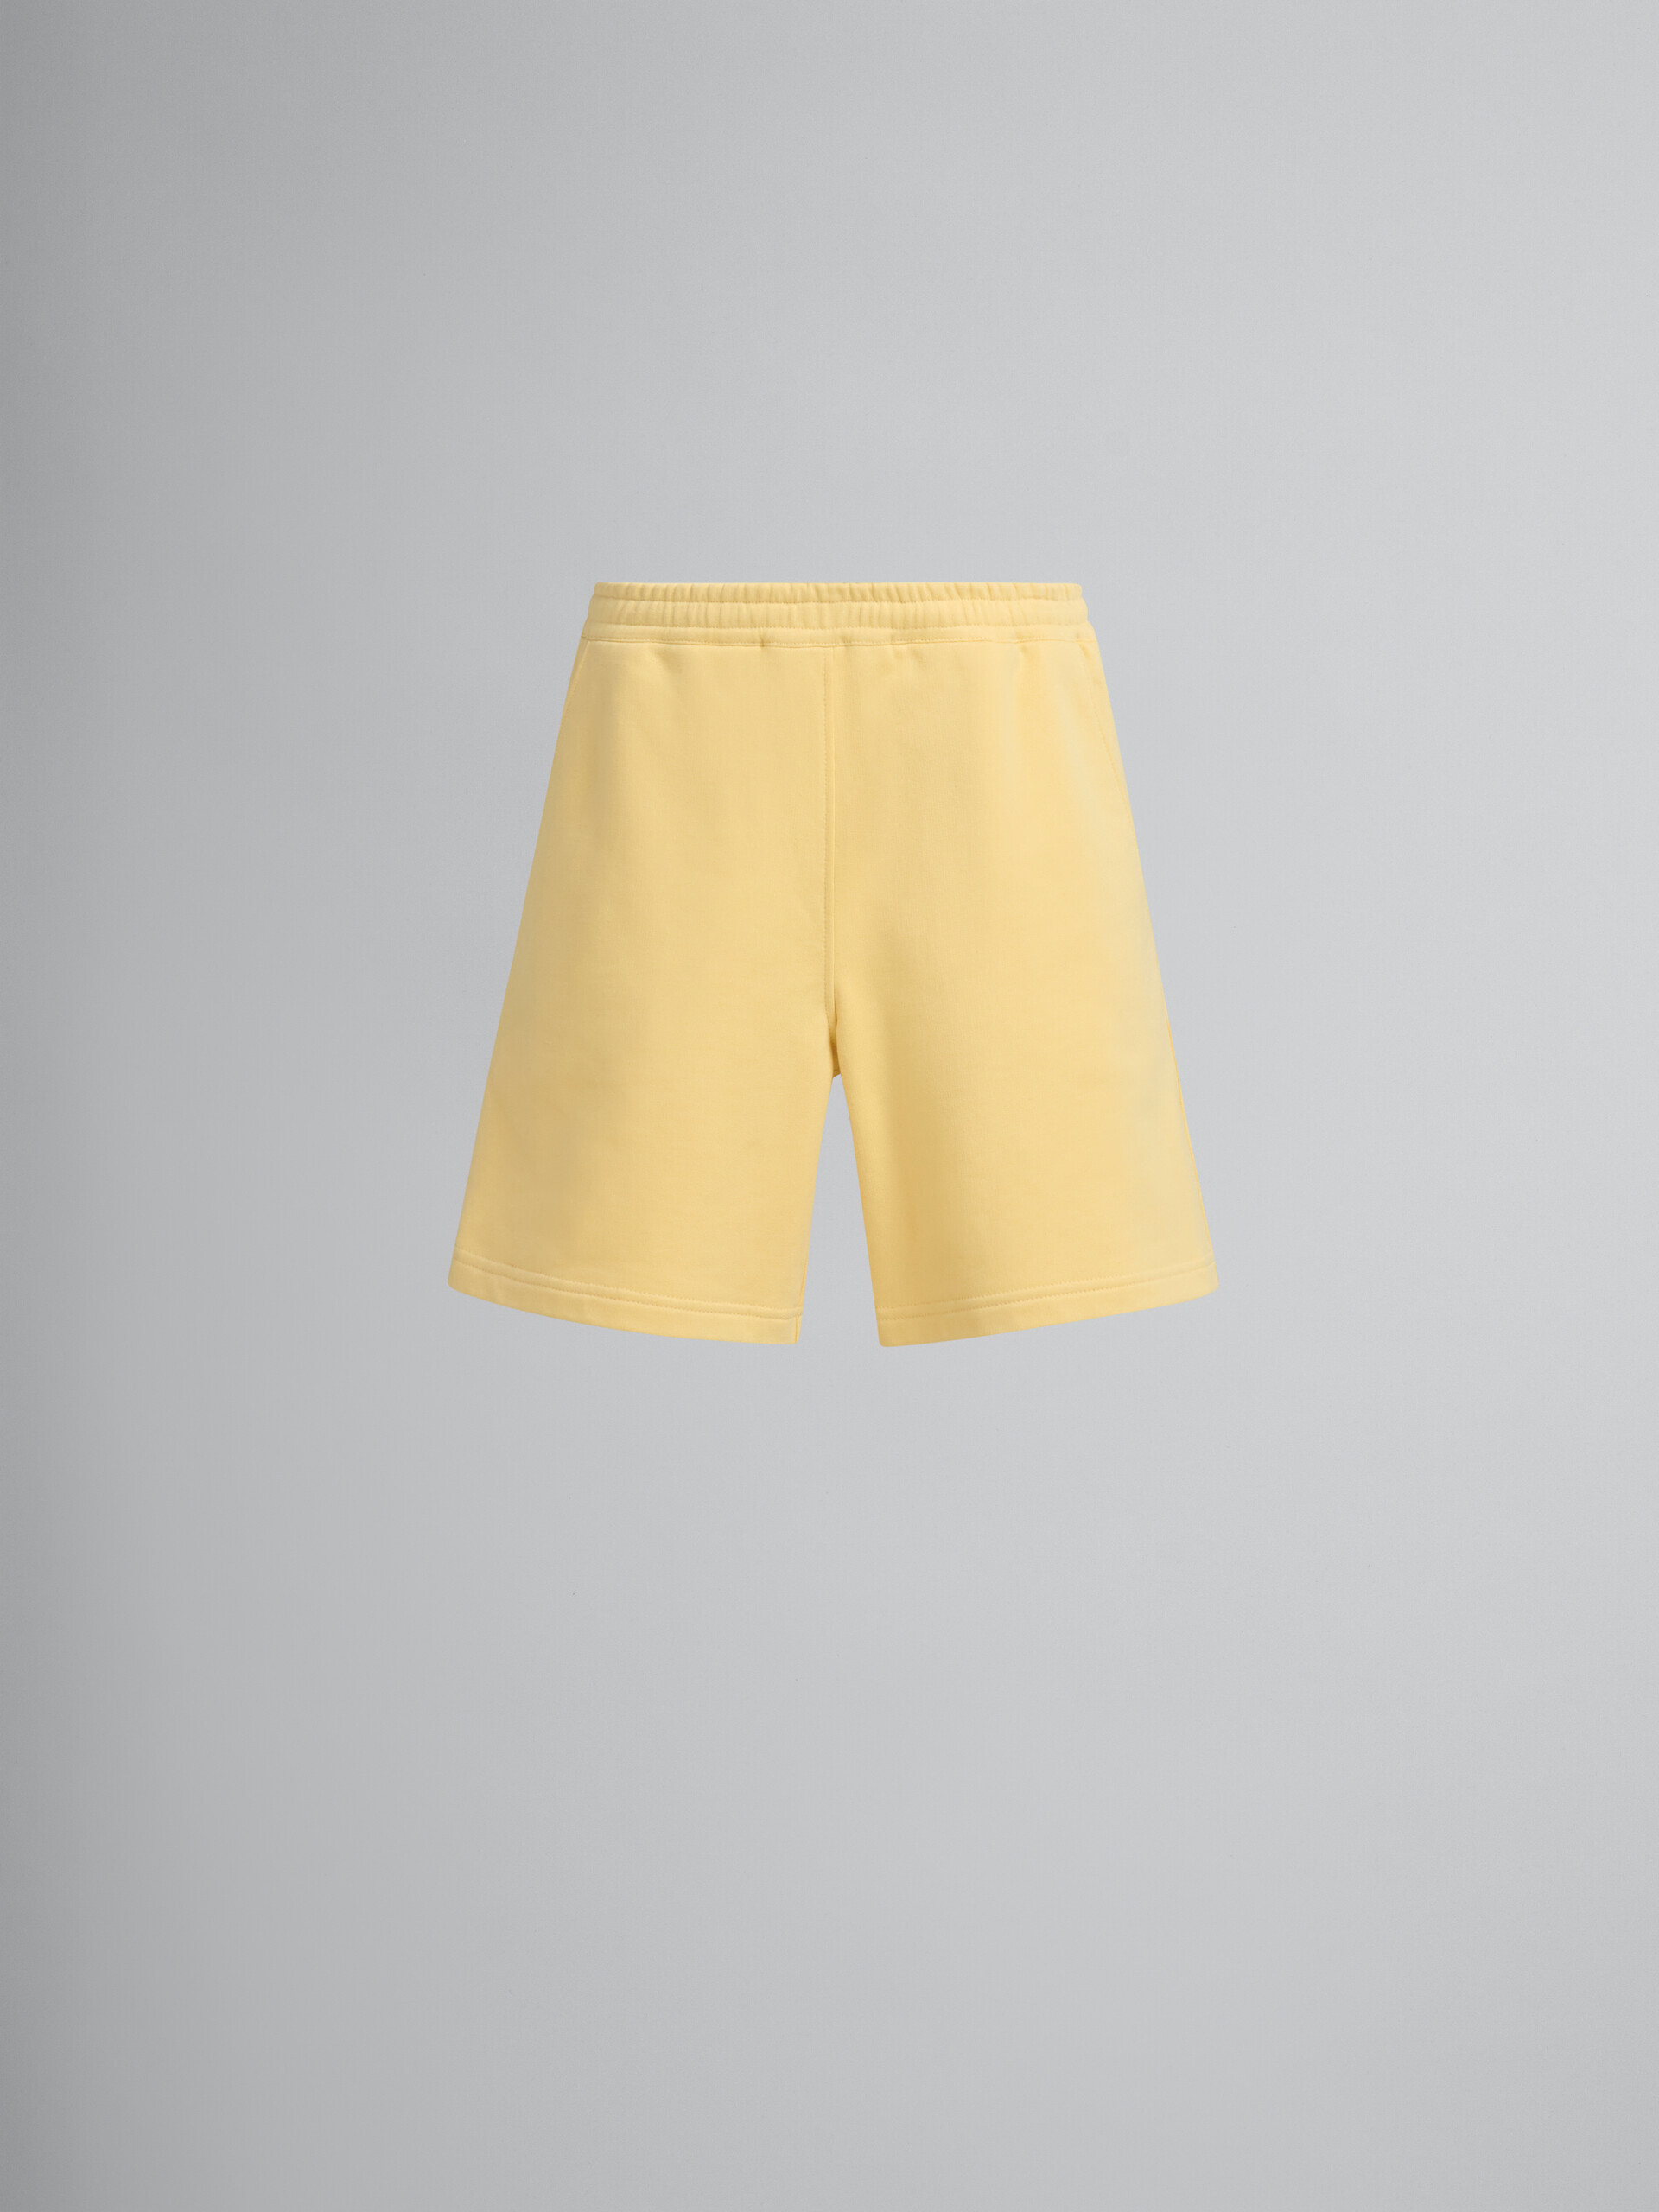 Bermuda Marni en molleton de coton organique jaune avec surpiqûres - Pantalons - Image 2